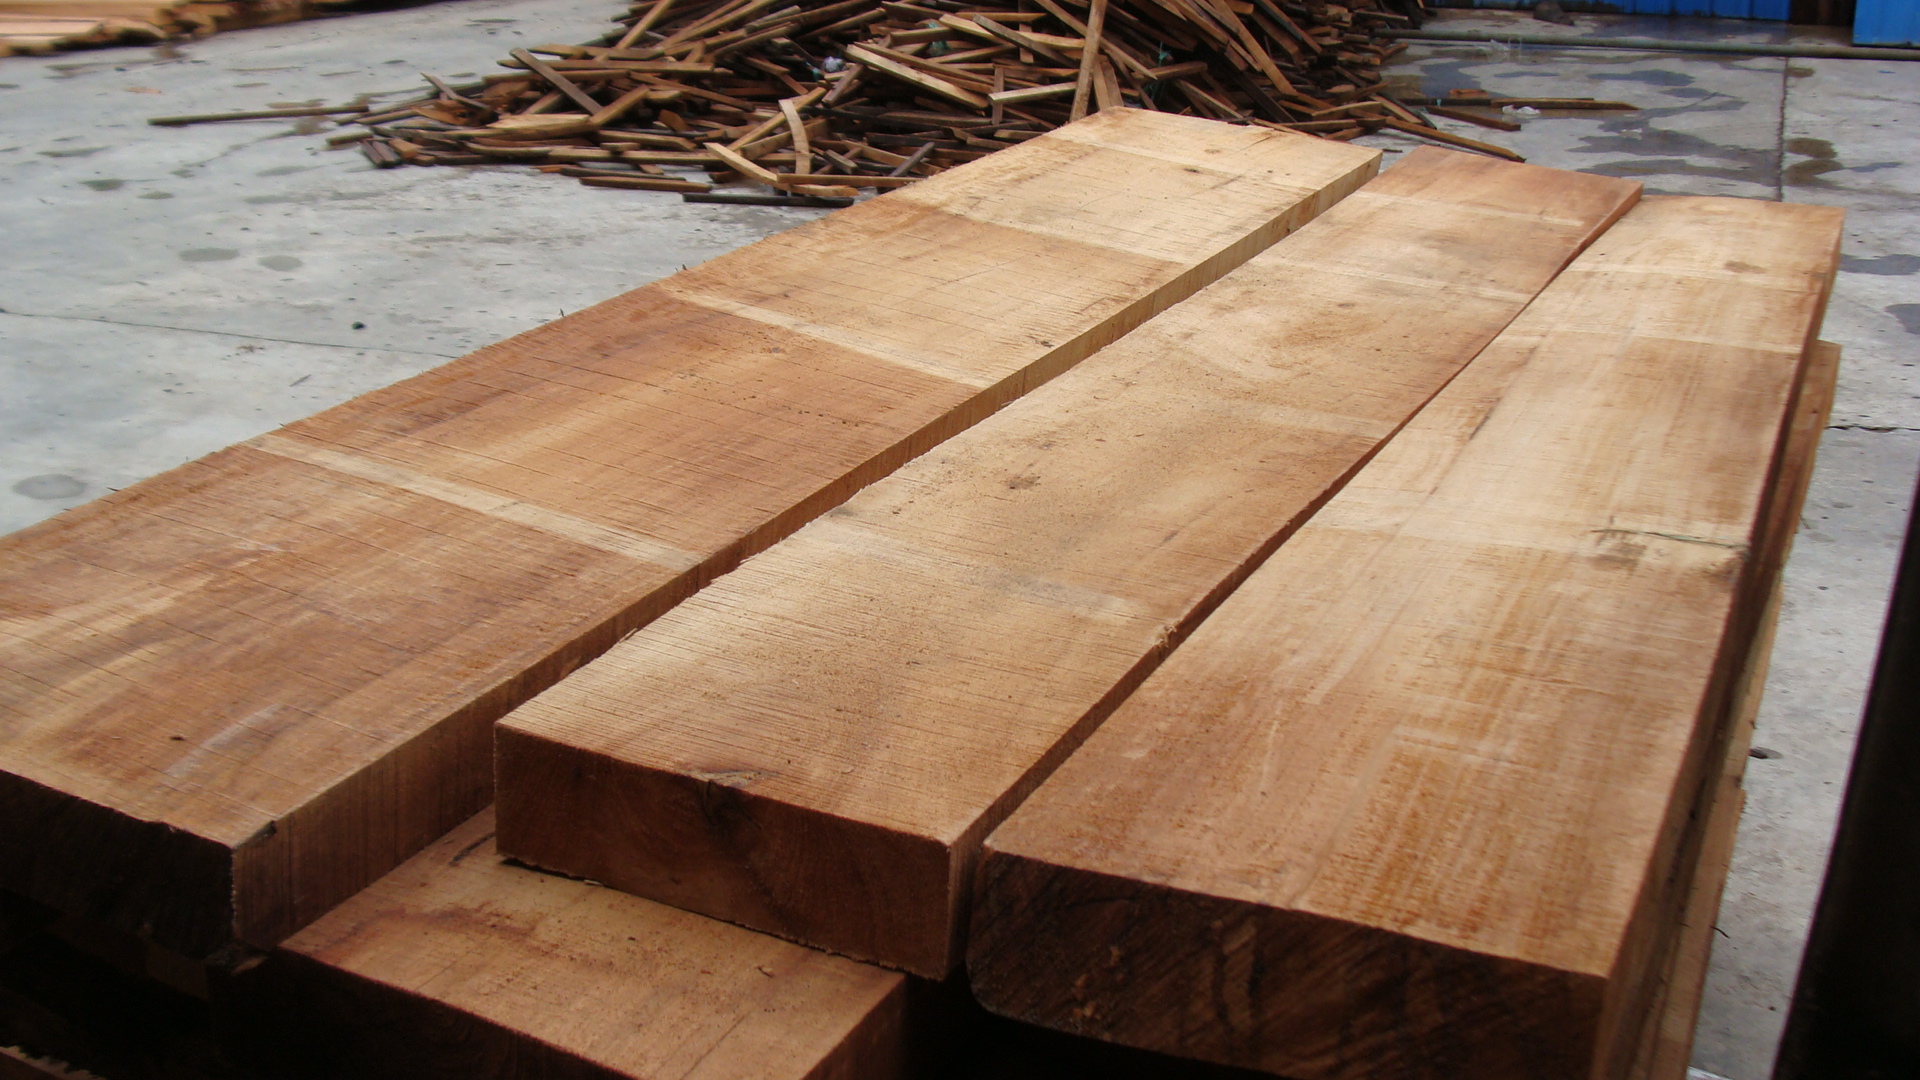 橡胶木是什么档次的木材?橡胶木有什么优势